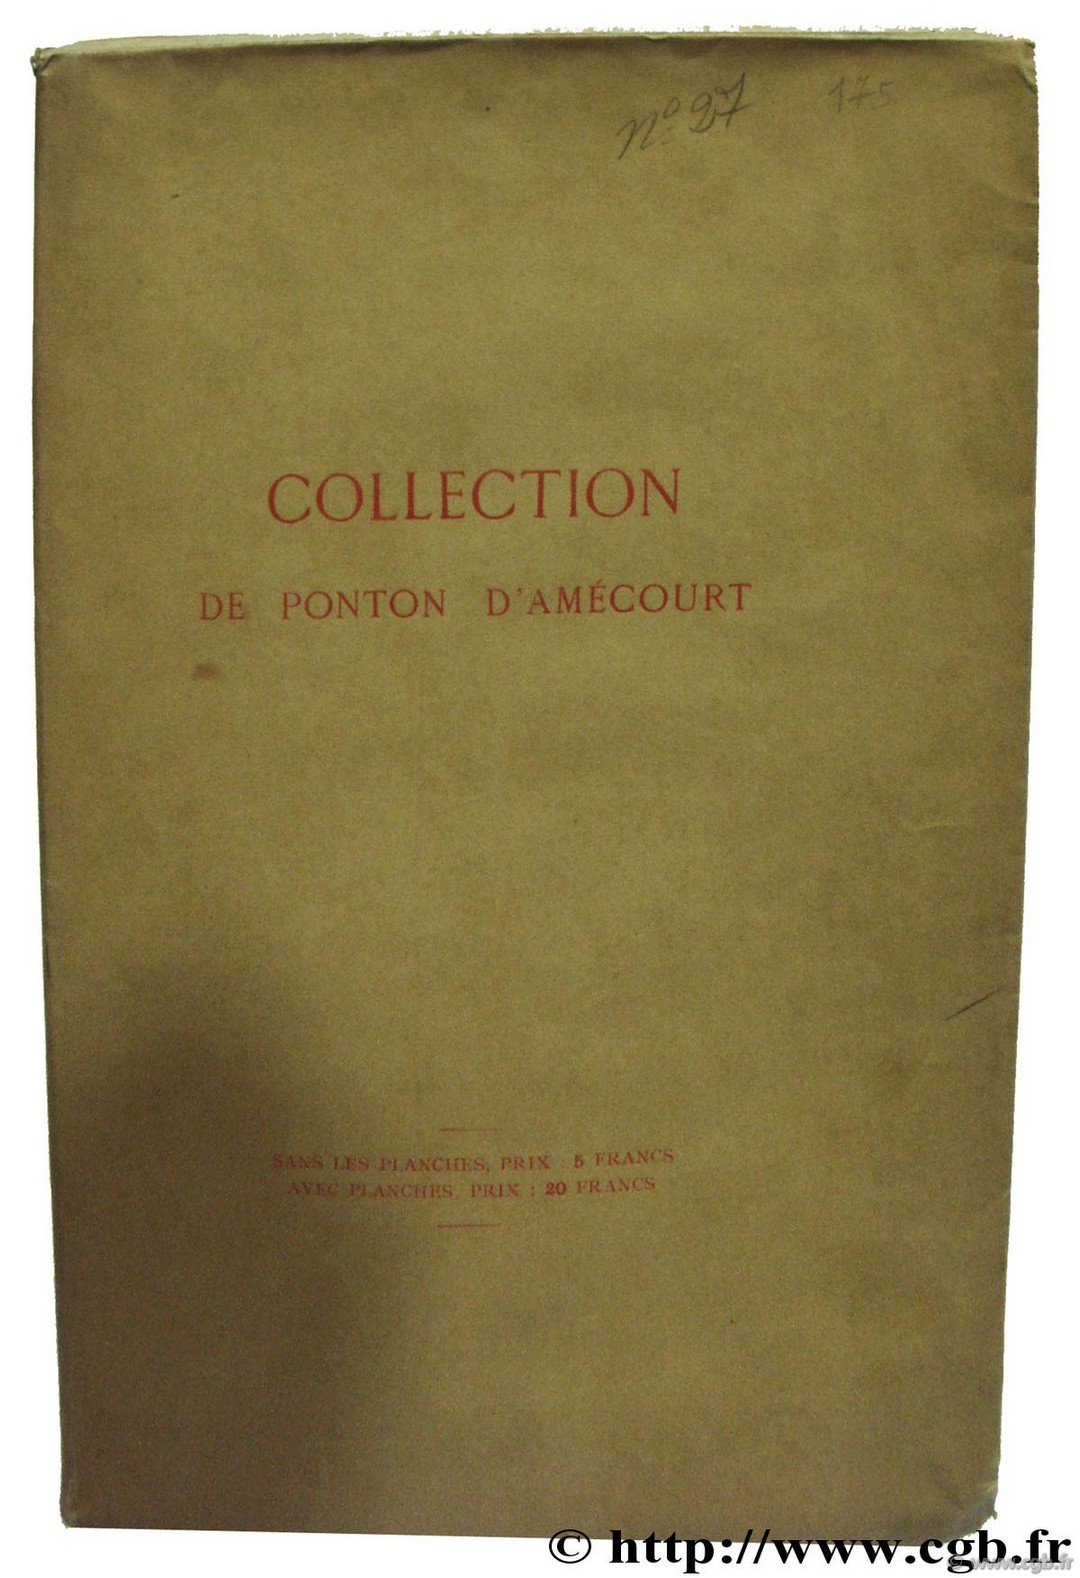 Collection de Ponton d Amécourt, Monnaies d or romaines et byzantines 